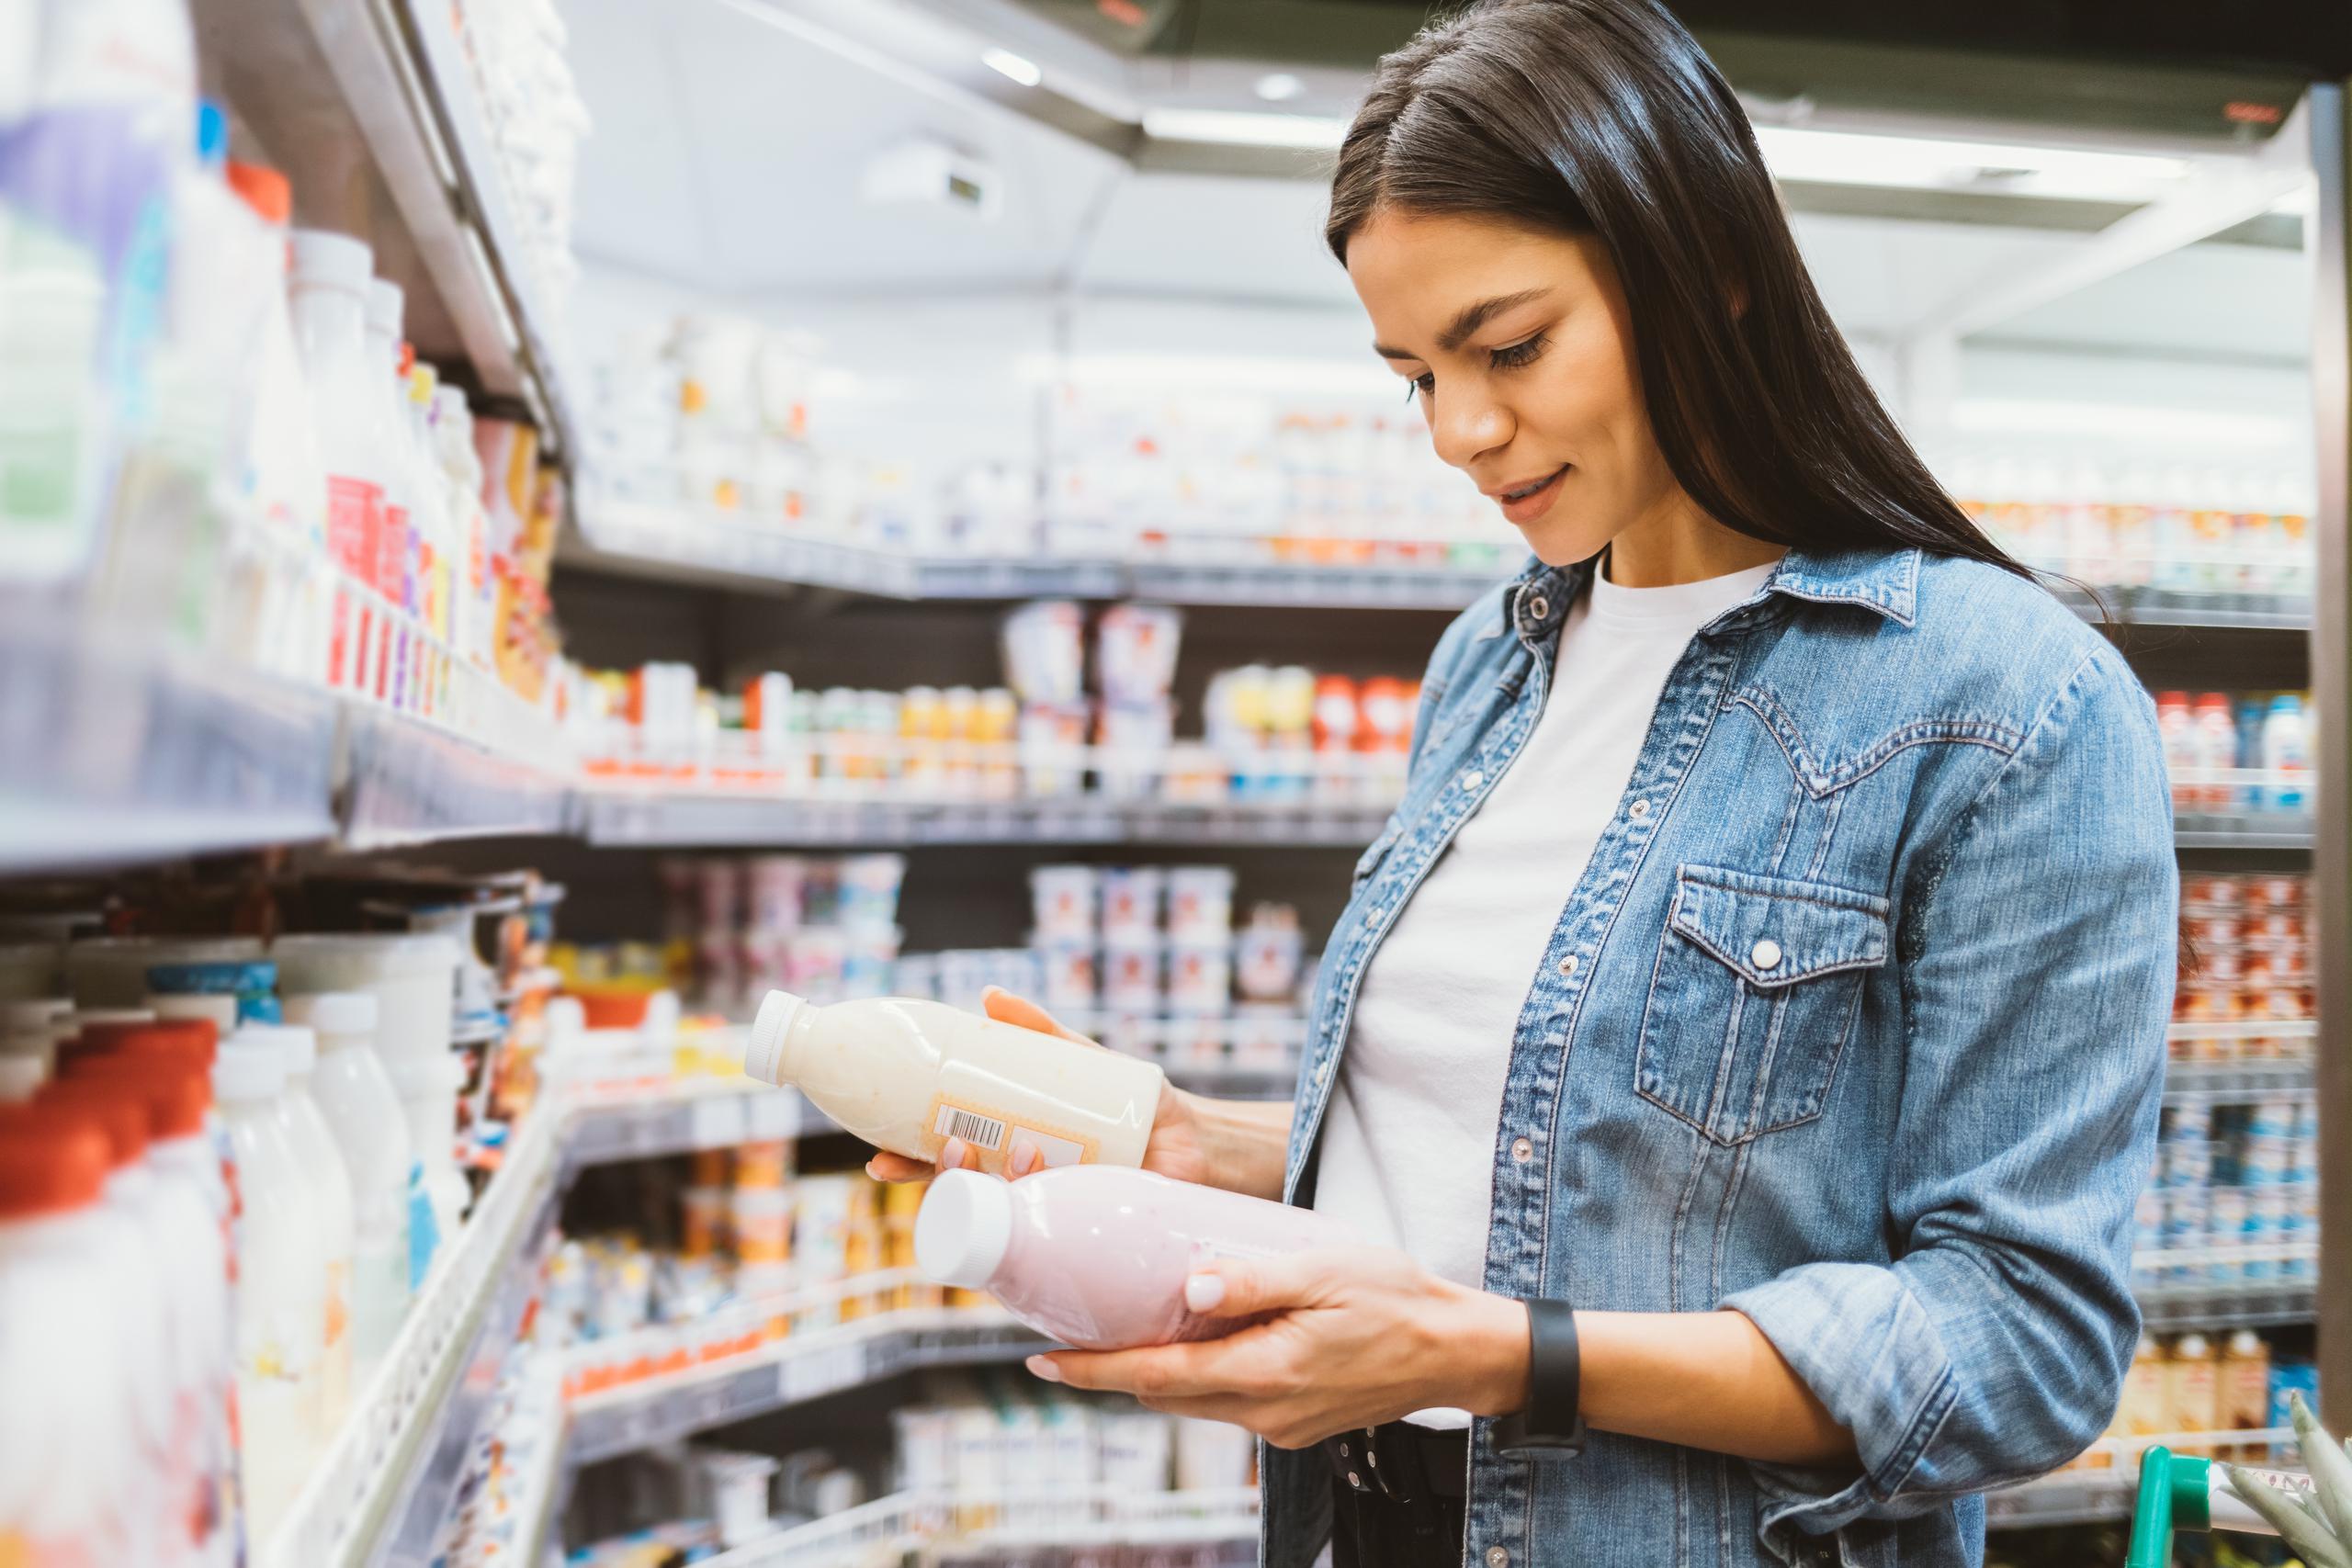 Aprender a leer la etiqueta con los datos nutricionales que por ley federal deben tener los alimentos te ayudará a tomar decisiones educadas sobre lo que vas a consumir.